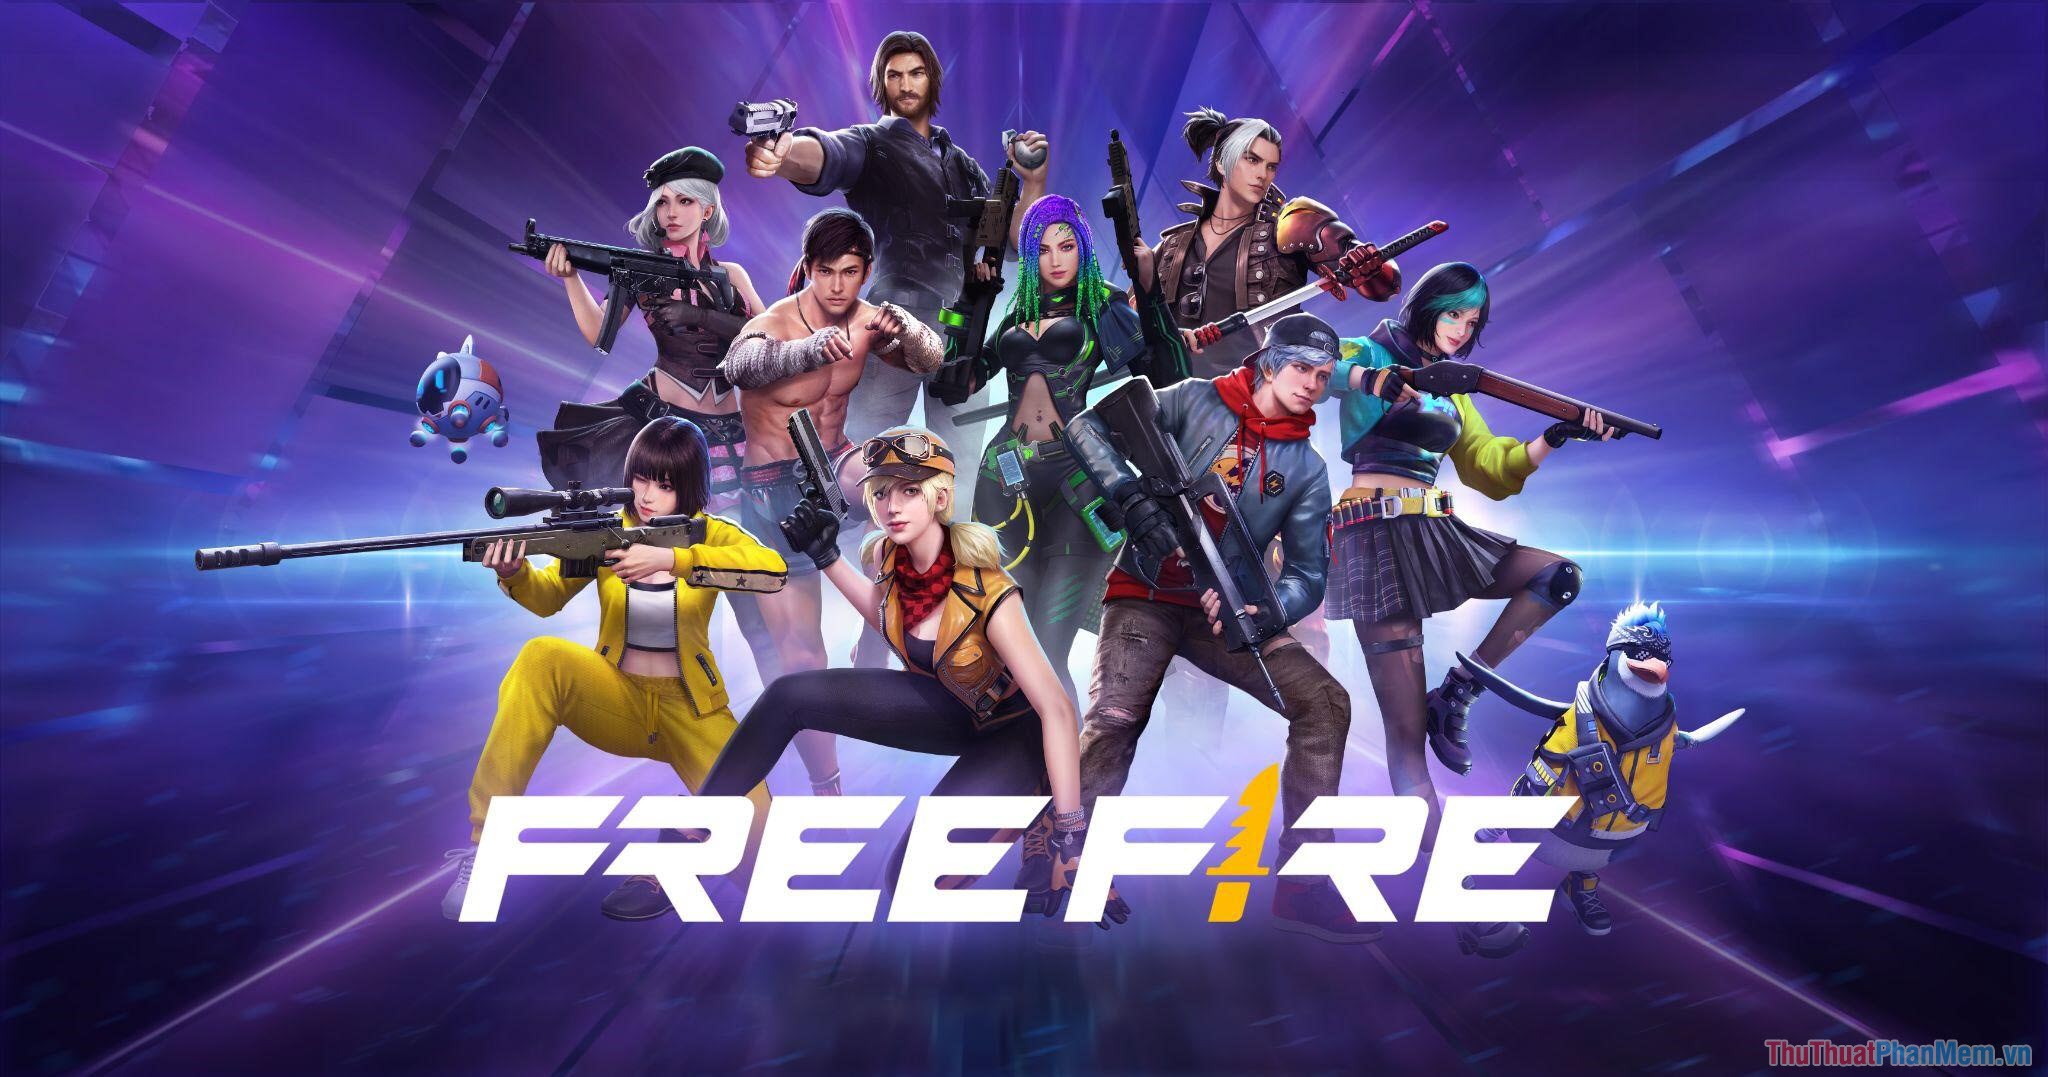 Free Fire – Game “sơn súng” chơi cùng bạn bè